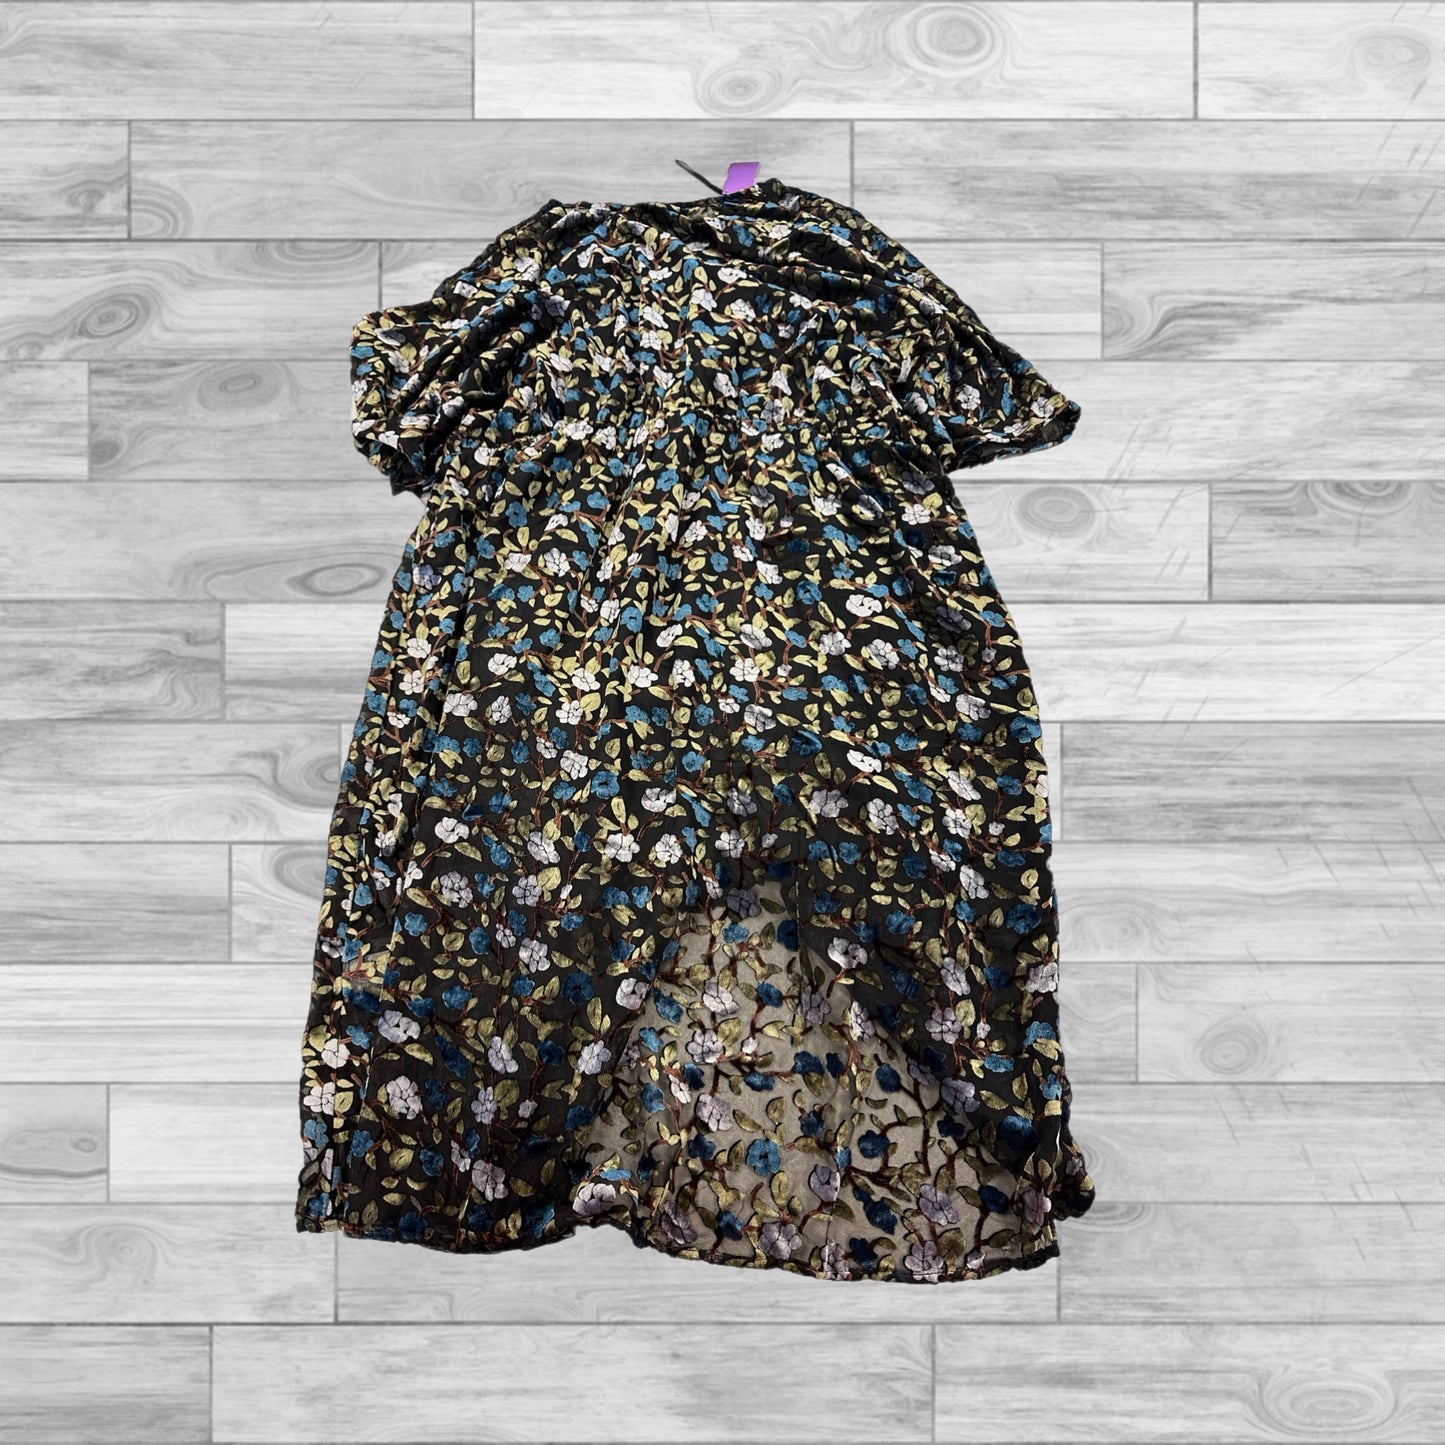 Multi-colored Dress Casual Midi Modcloth, Size 2x